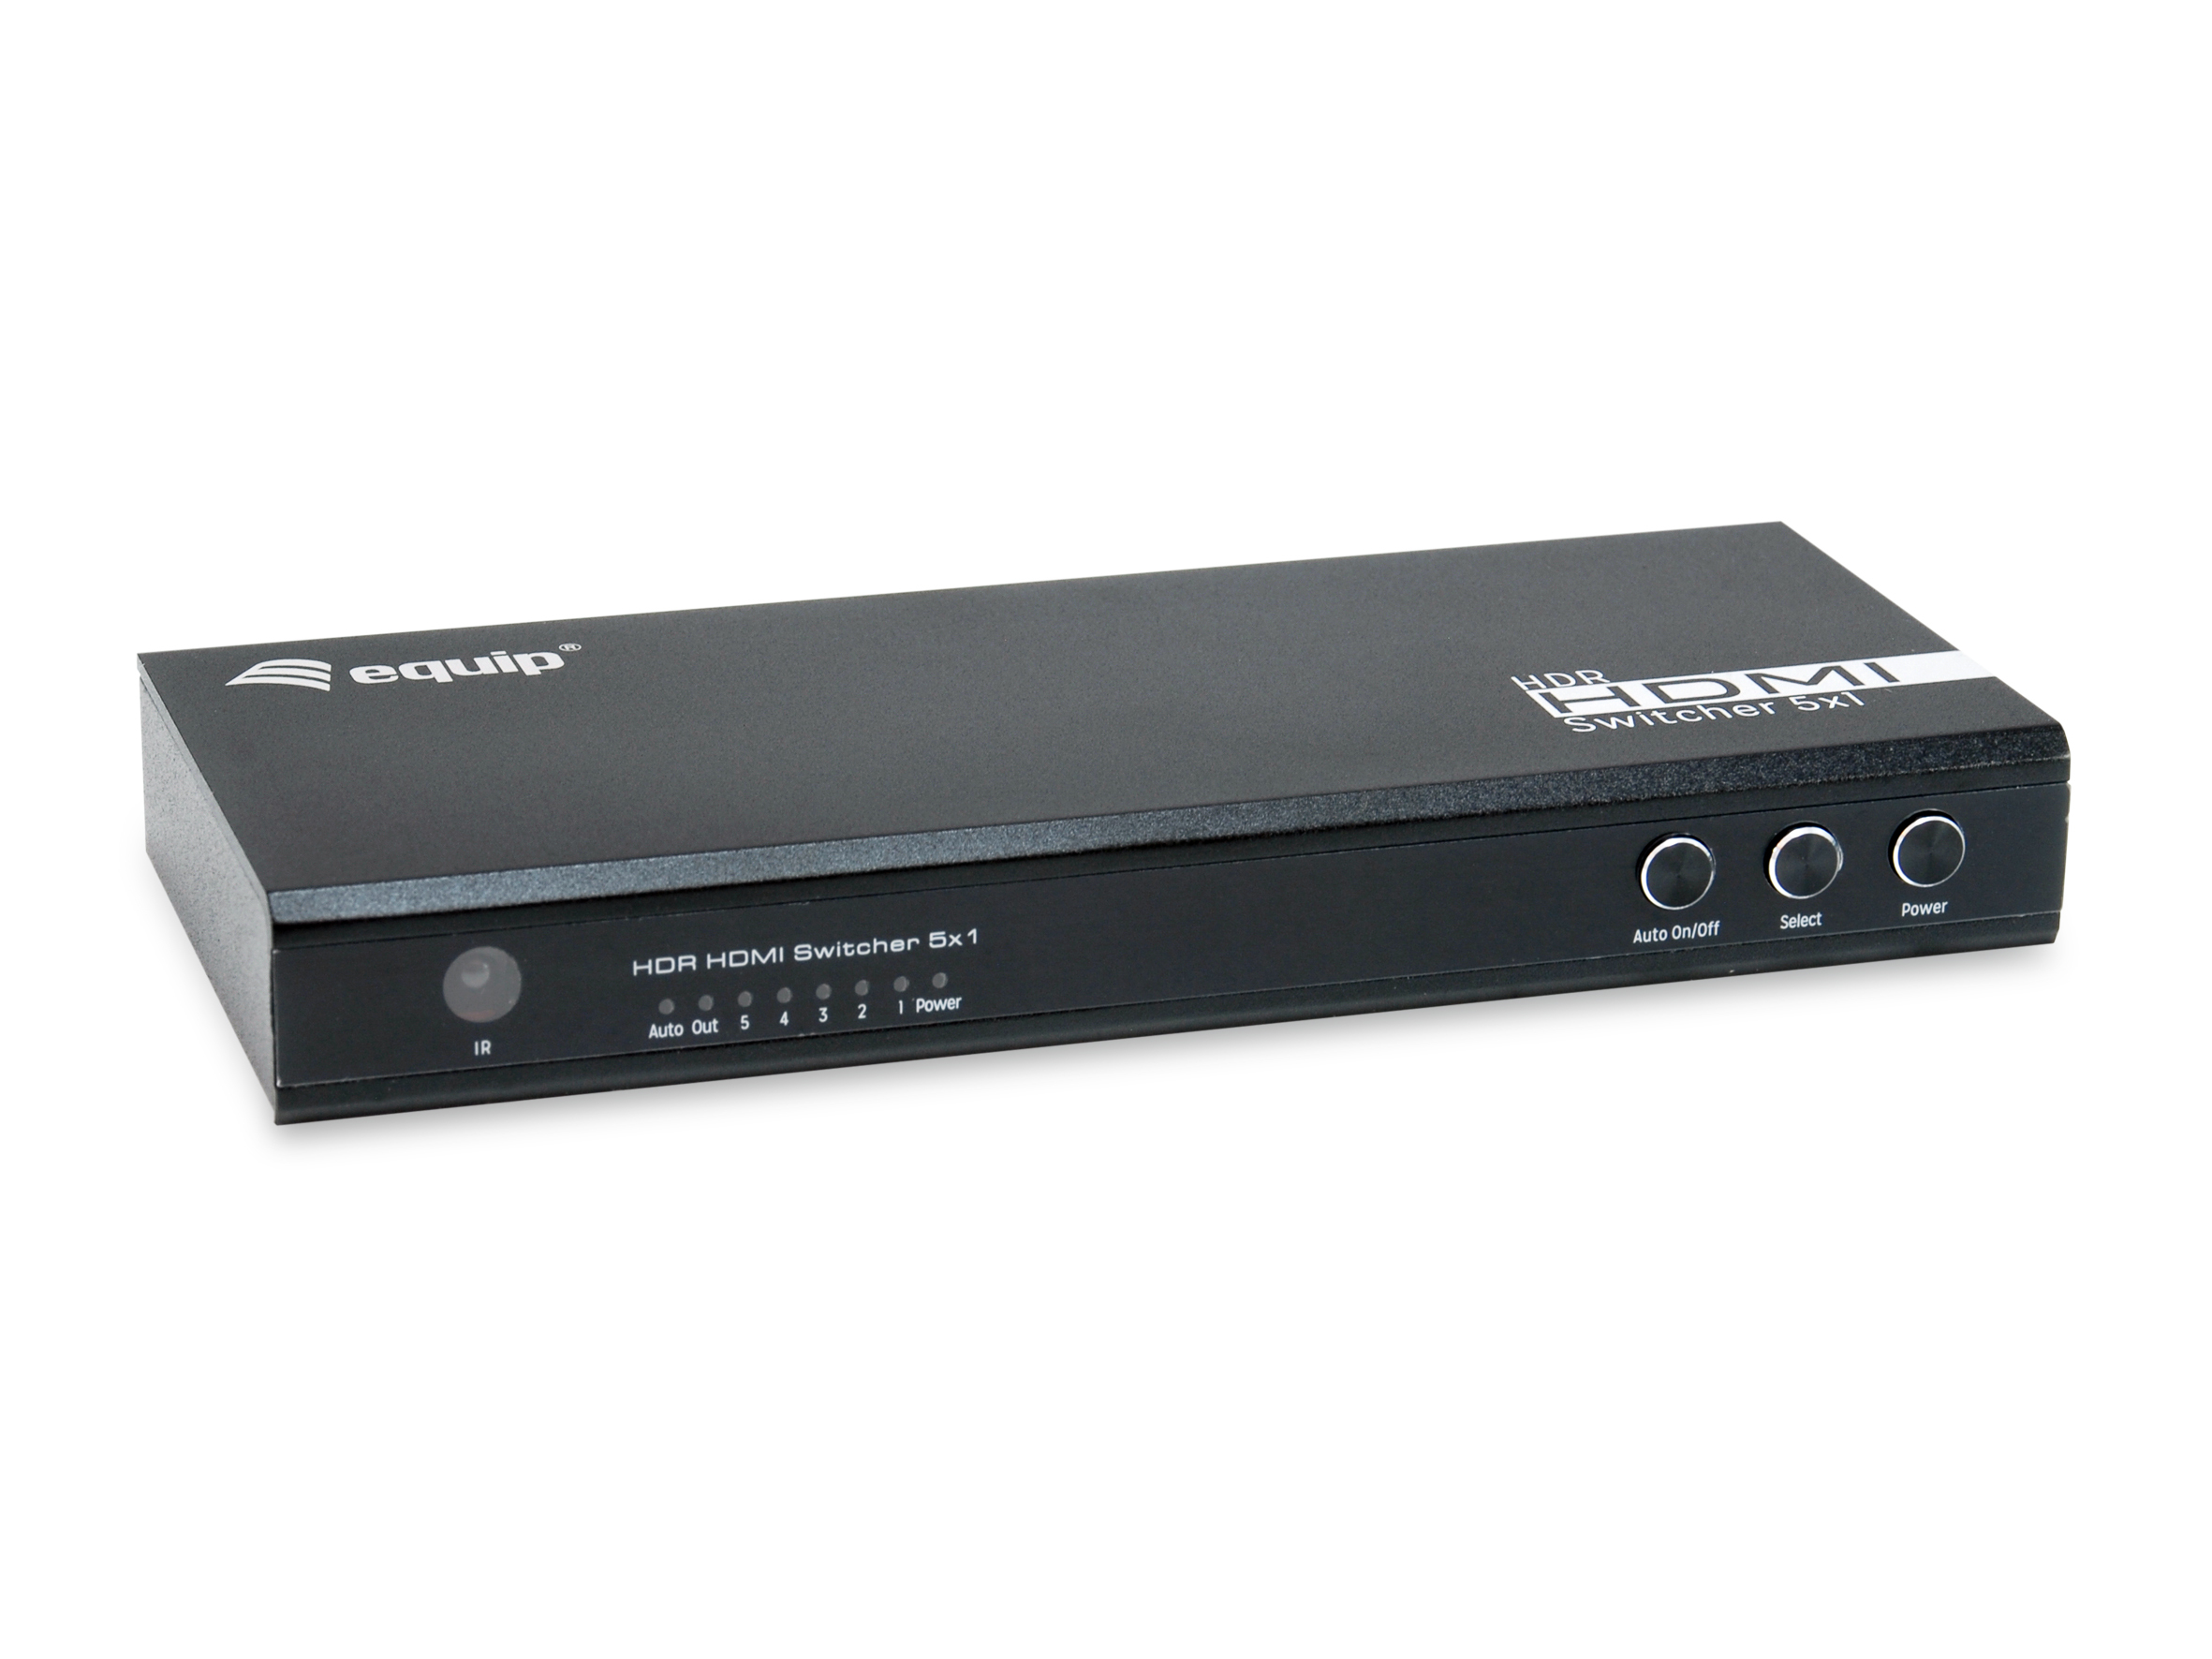 EQUIP Switch 5x1, HDMI 2.0, 4 K, 60 Hz, schwarz, inkl.Fernbedienung